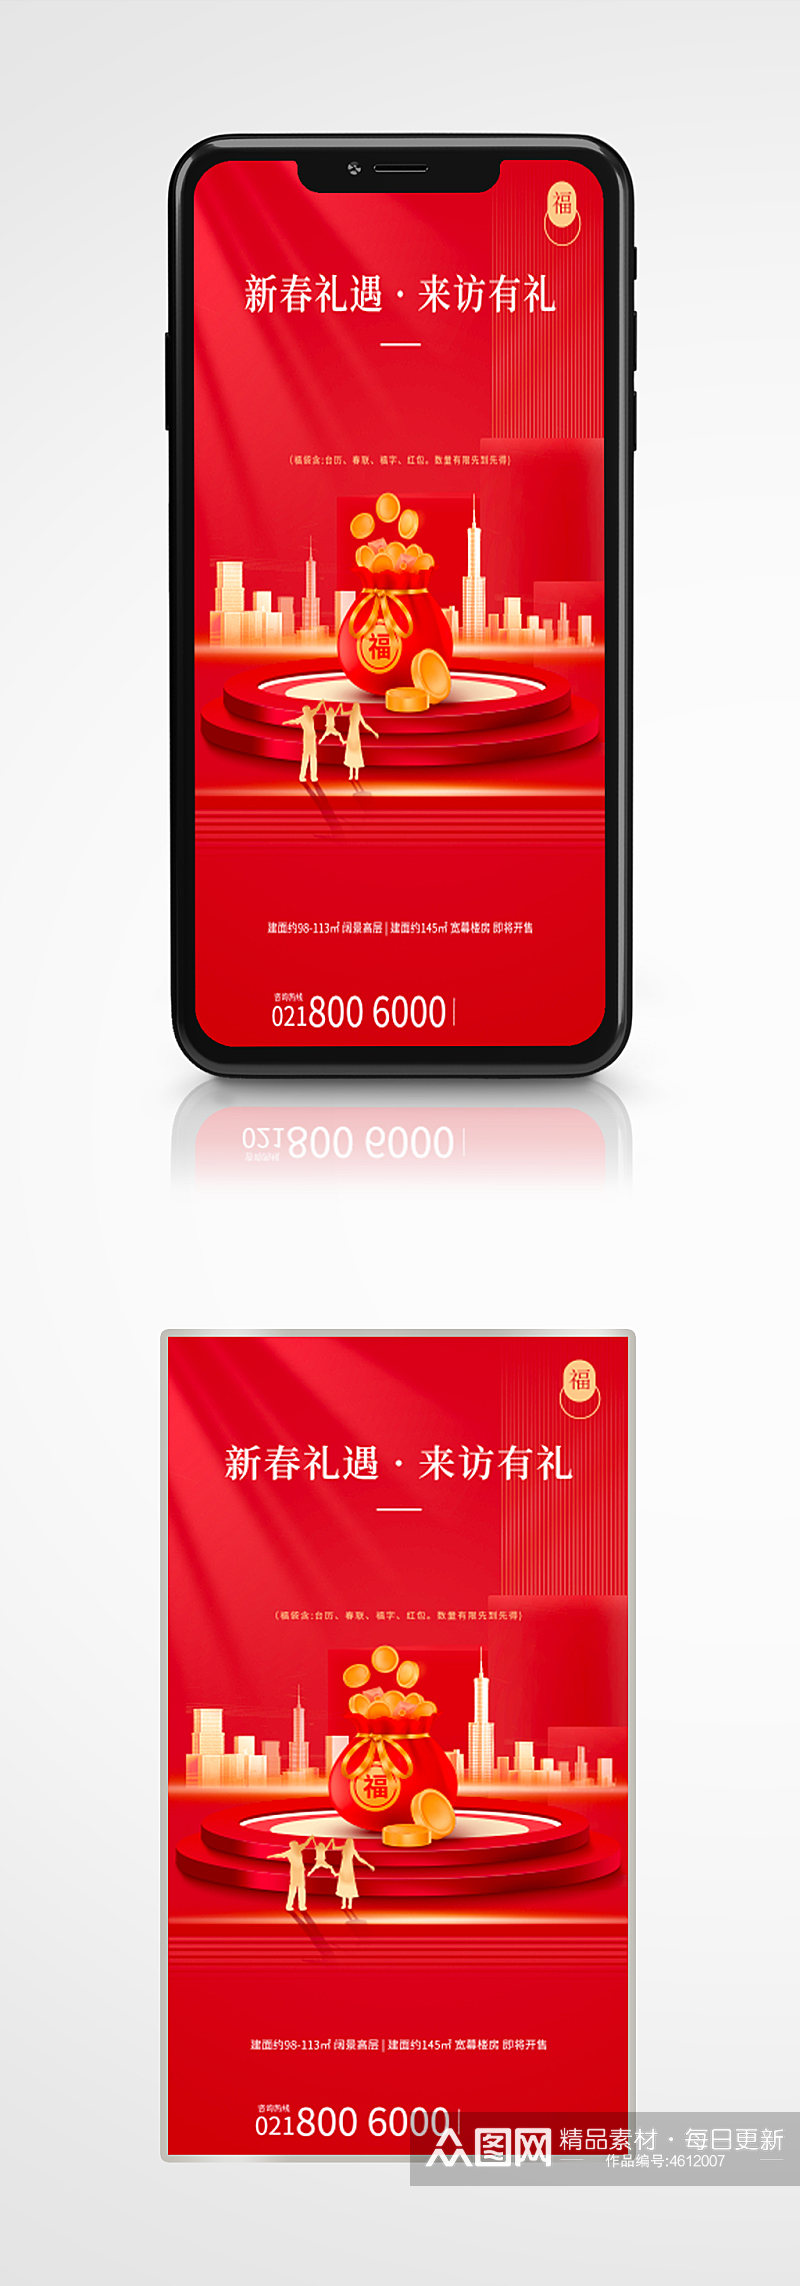 地产家居新年送福袋活动中国风手机海报红色素材